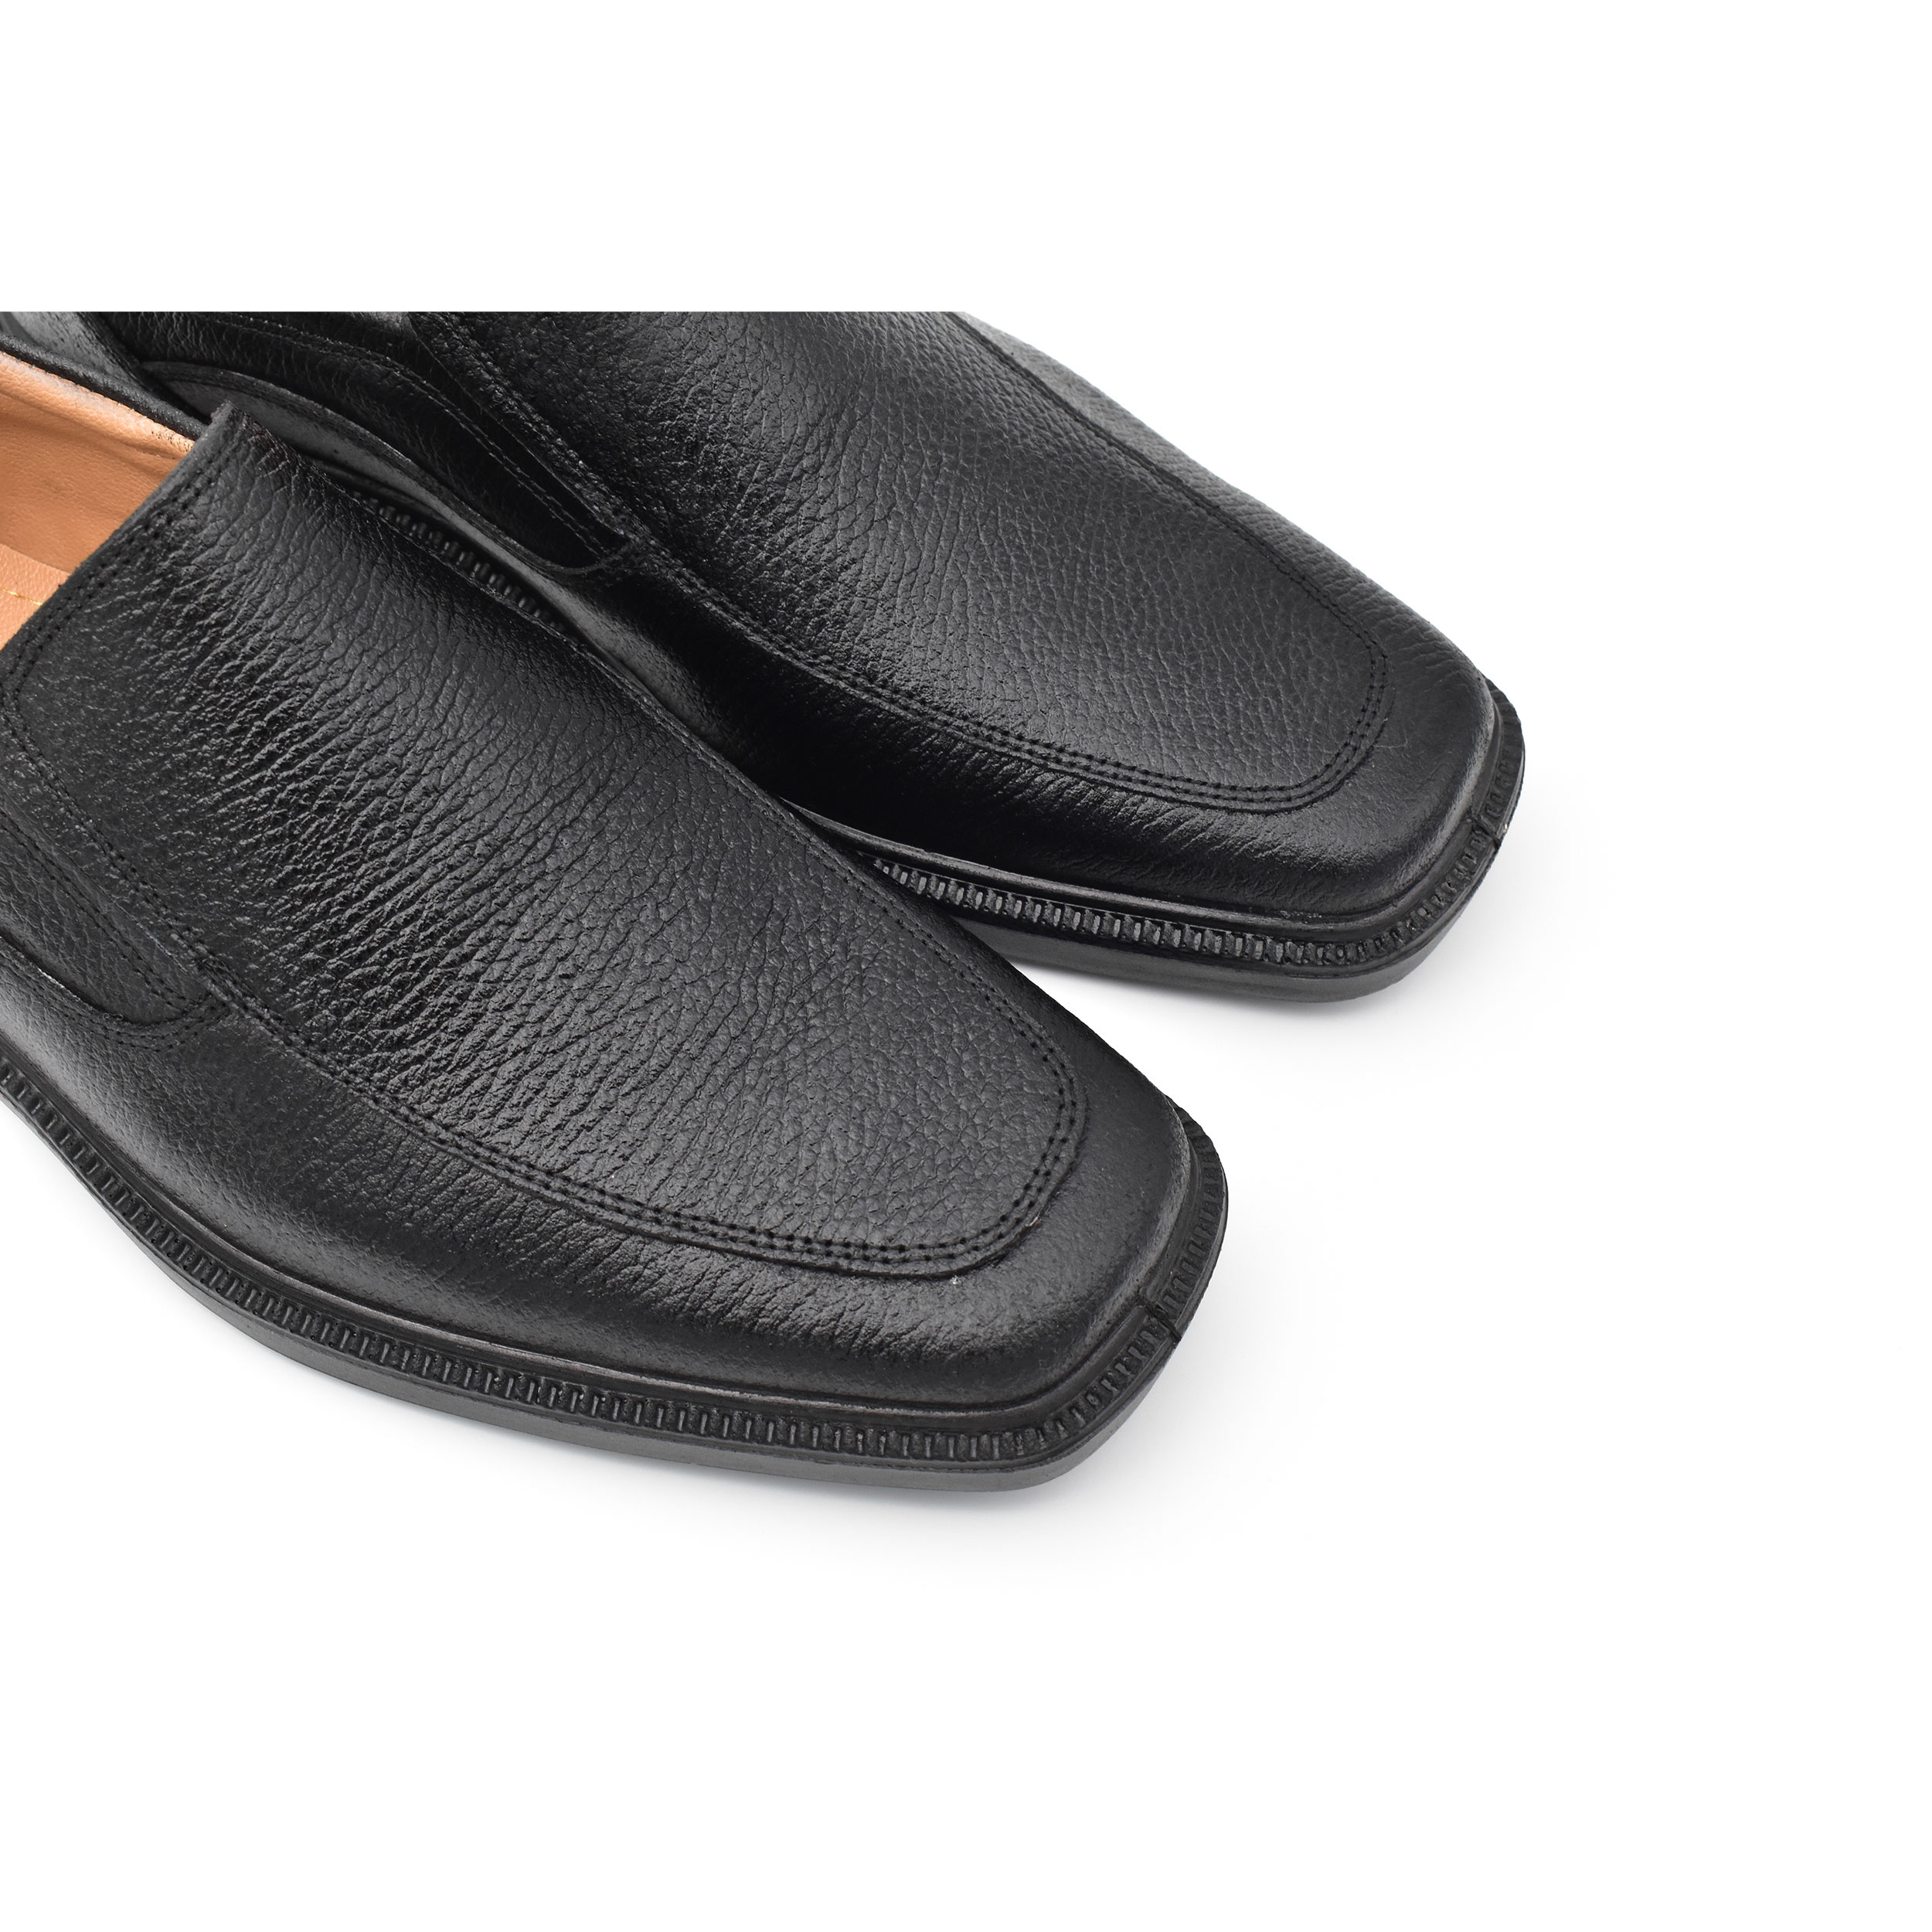 کفش مردانه پاما مدل Skit کد G1359 -  - 5